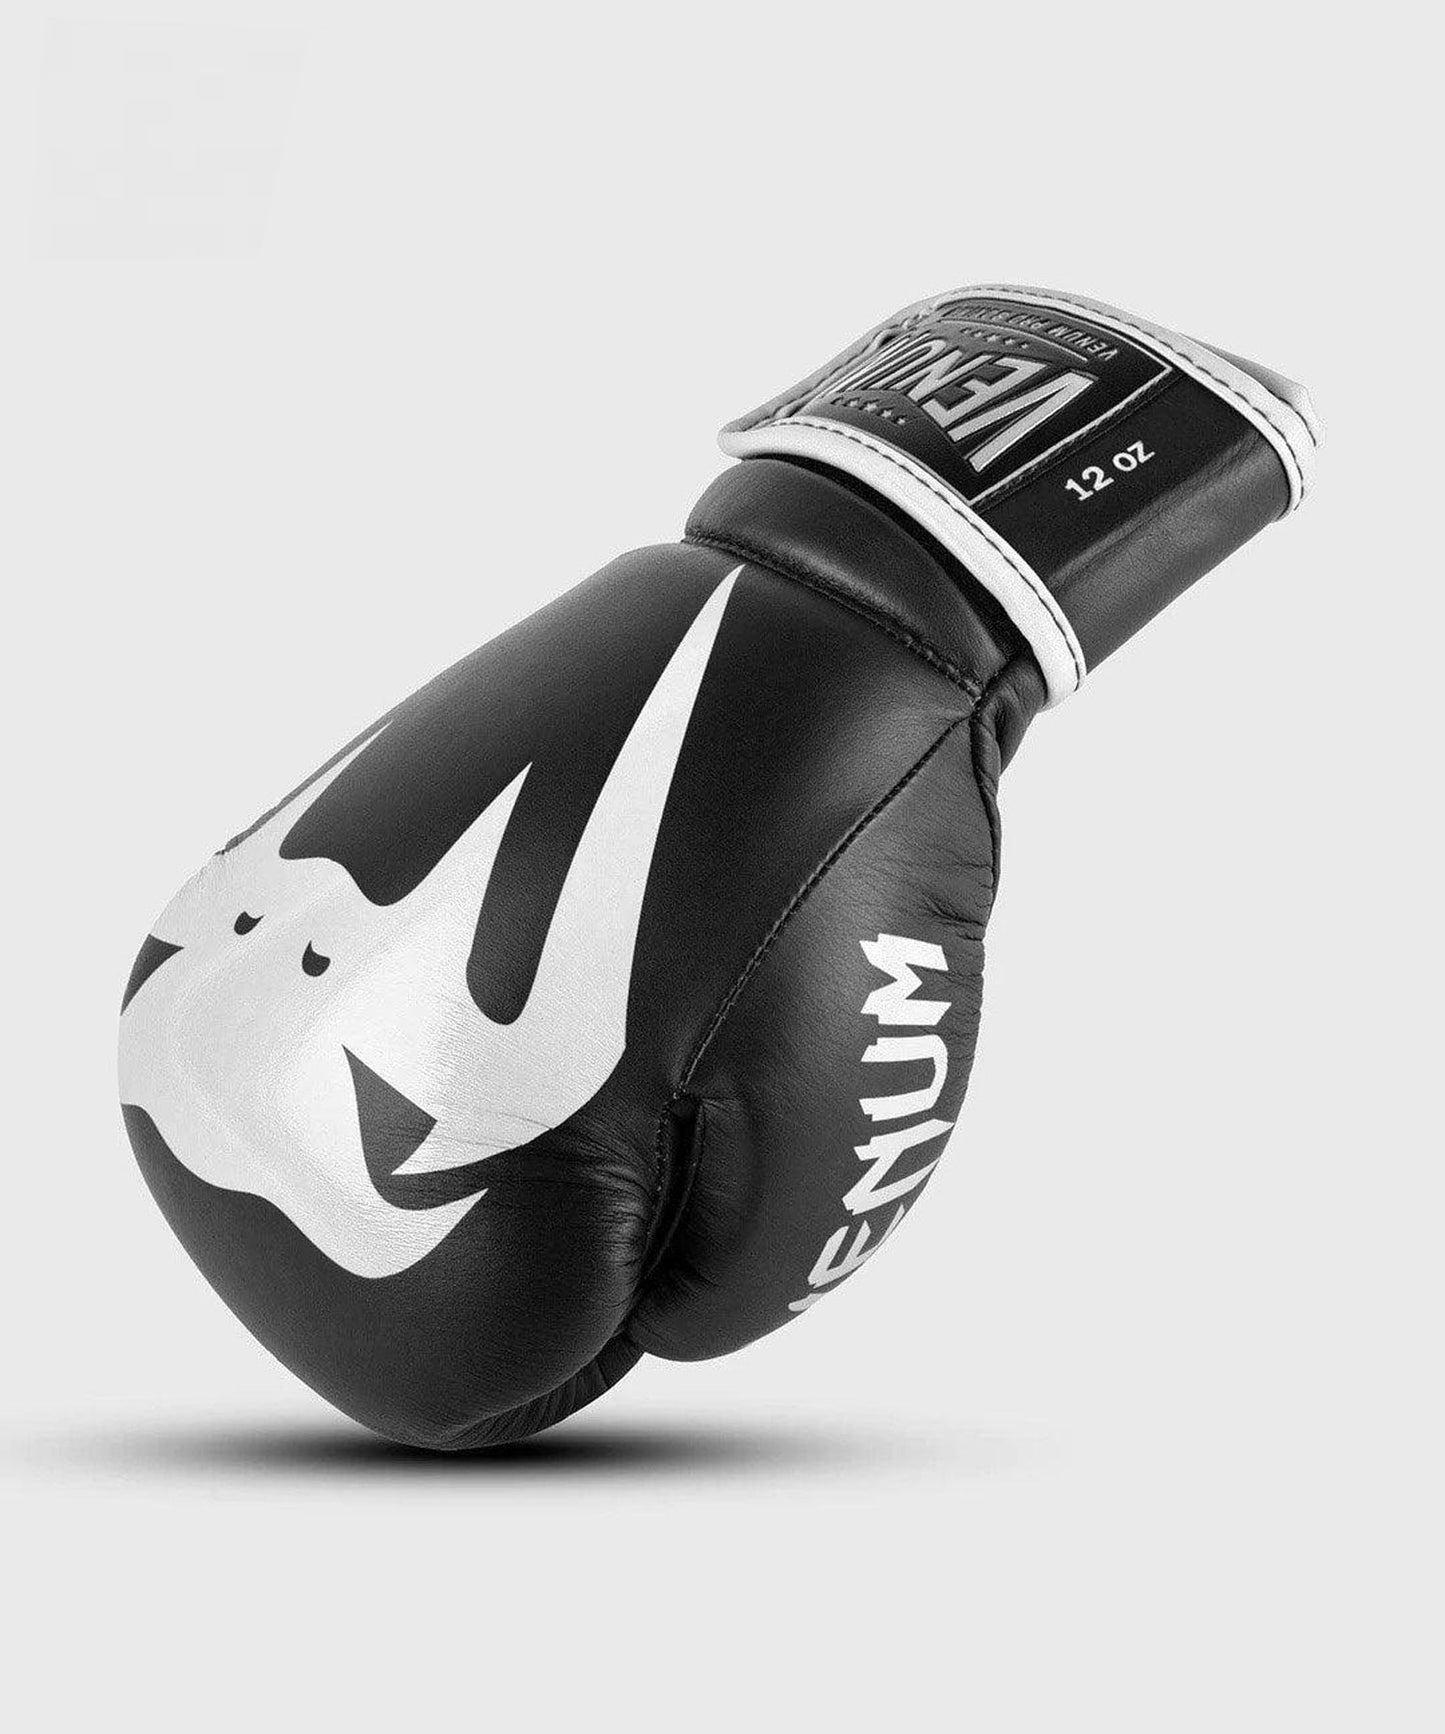 VENUM Custom Giant 2.0 Pro Boxing with Velcro